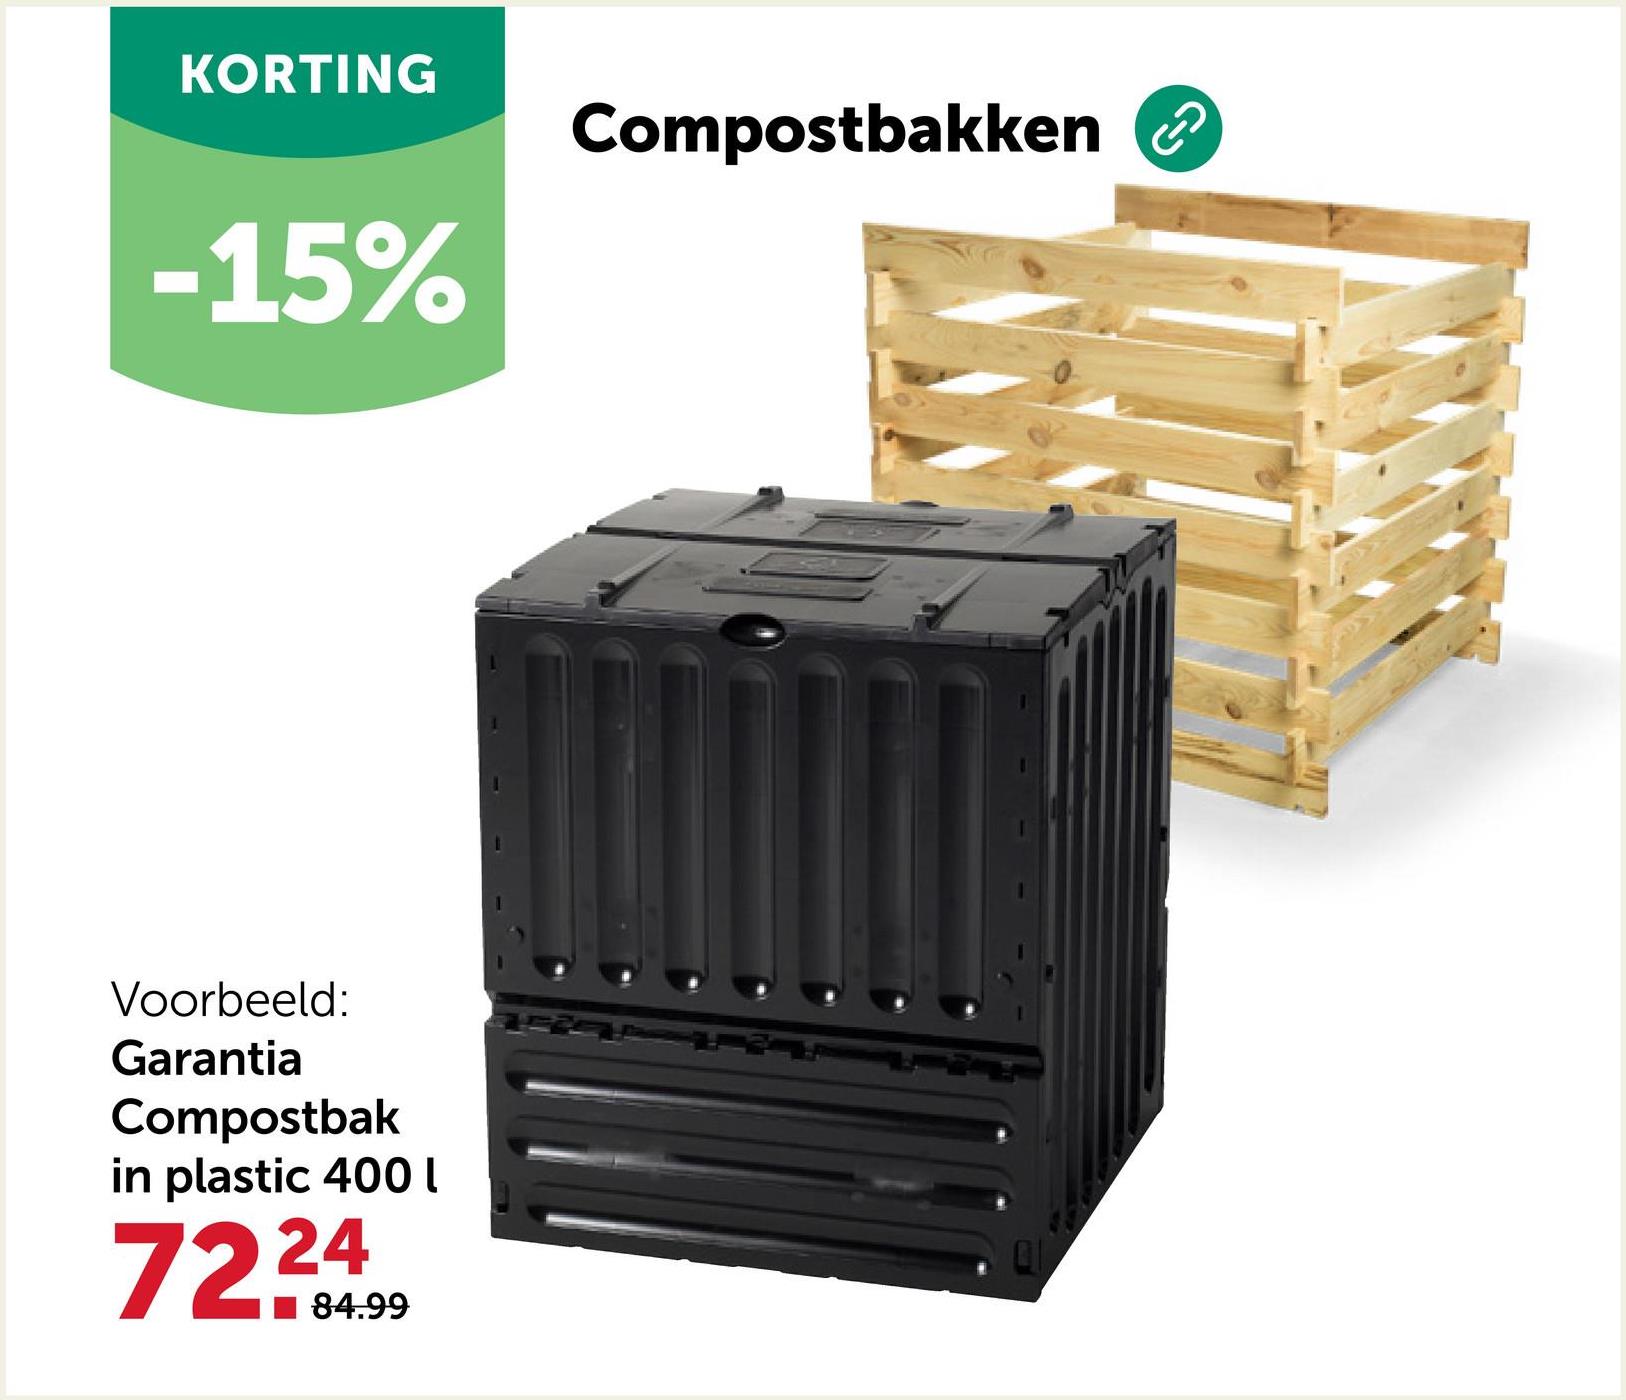 KORTING
-15%
Voorbeeld:
Garantia
Compostbak
in plastic 400
7224
84.99
Compostbakken